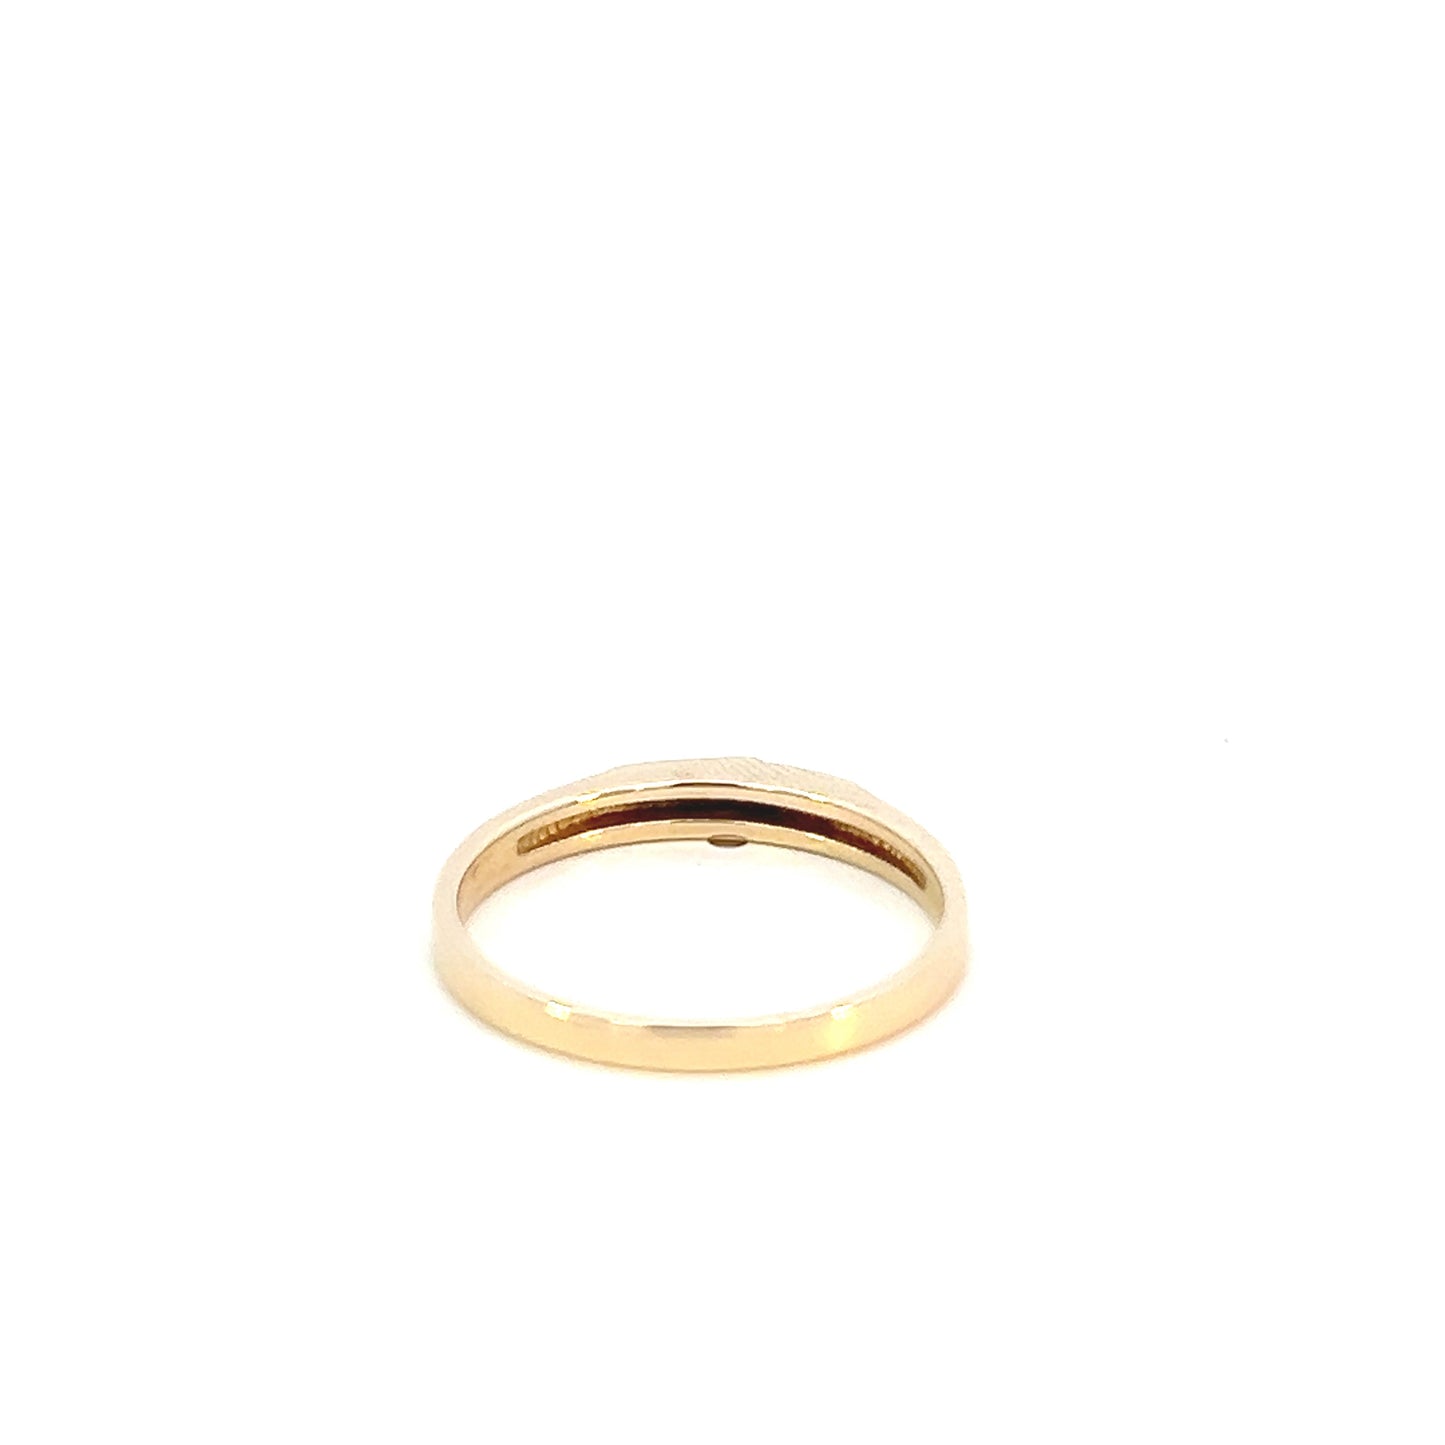 Minimalist Diamond Ring - 10k - Yellow Gold - Size 6.5